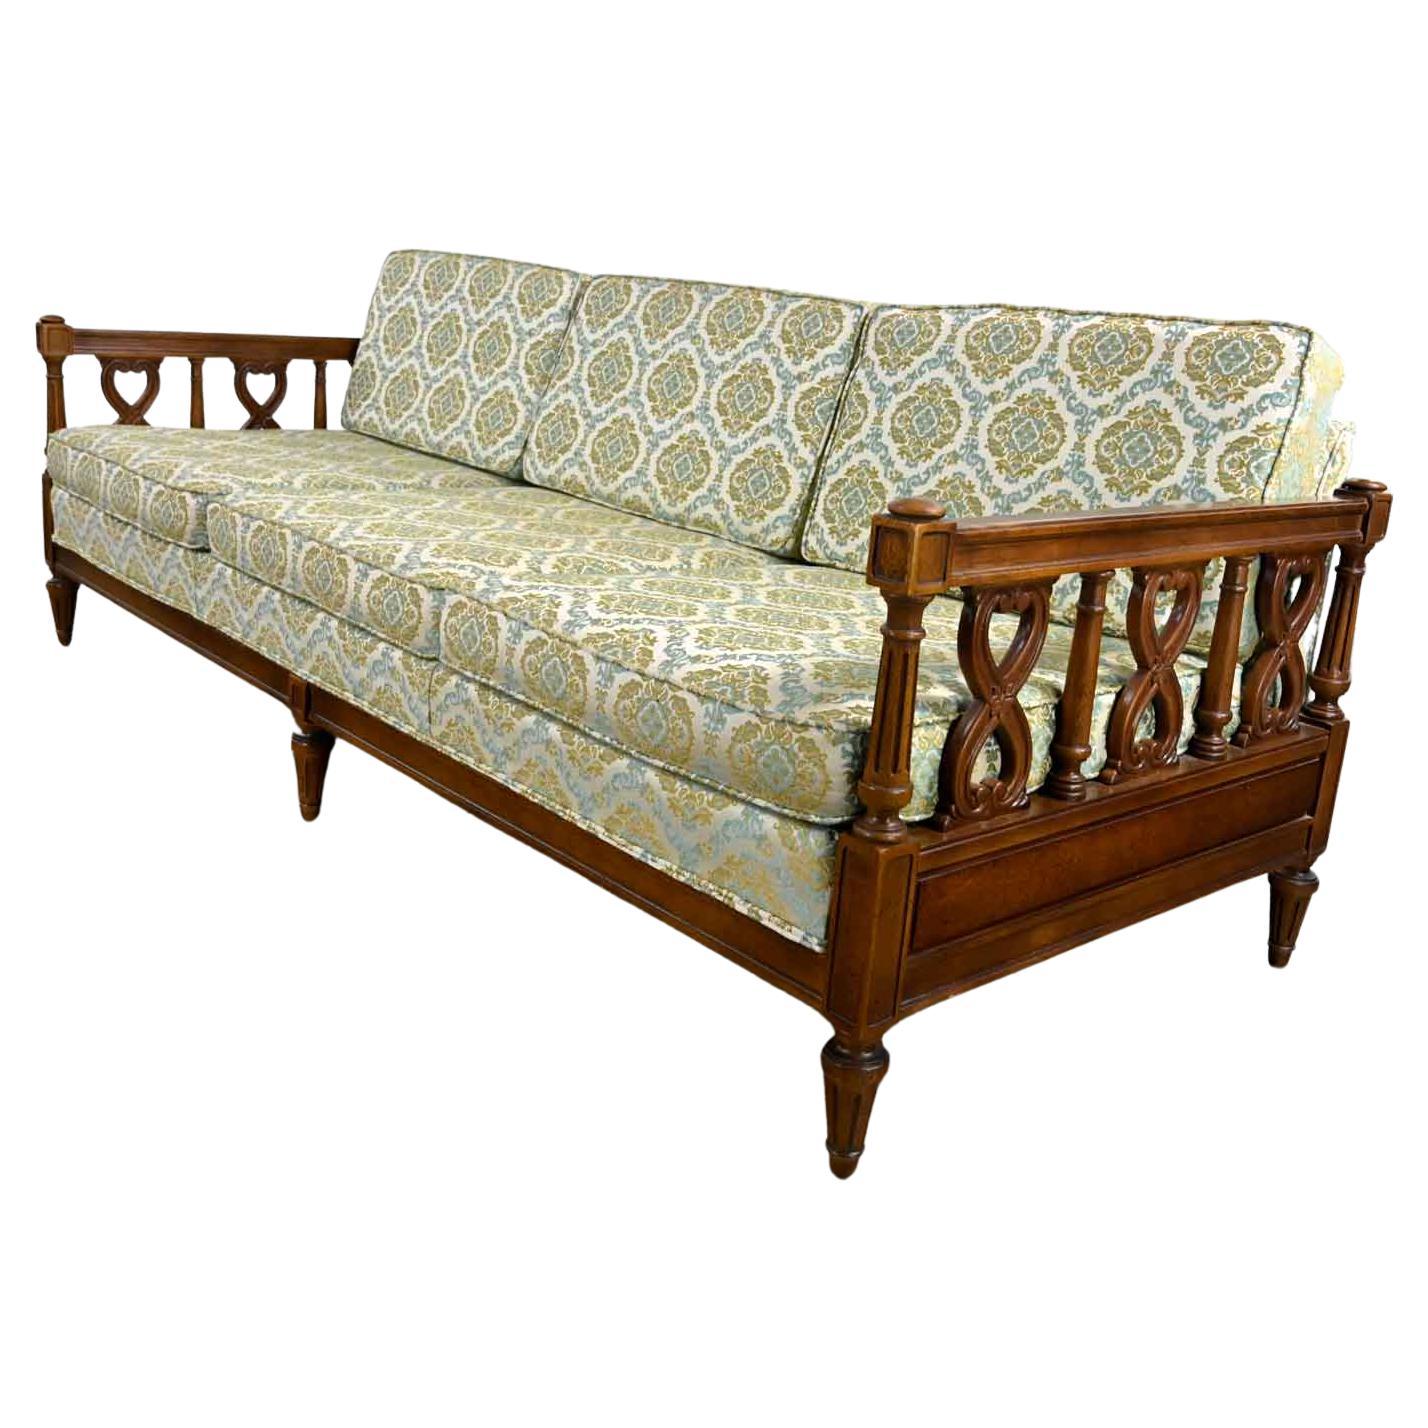 Vintage Mediterranean Spanish Revival Style Sofa Wood Details by American Furn